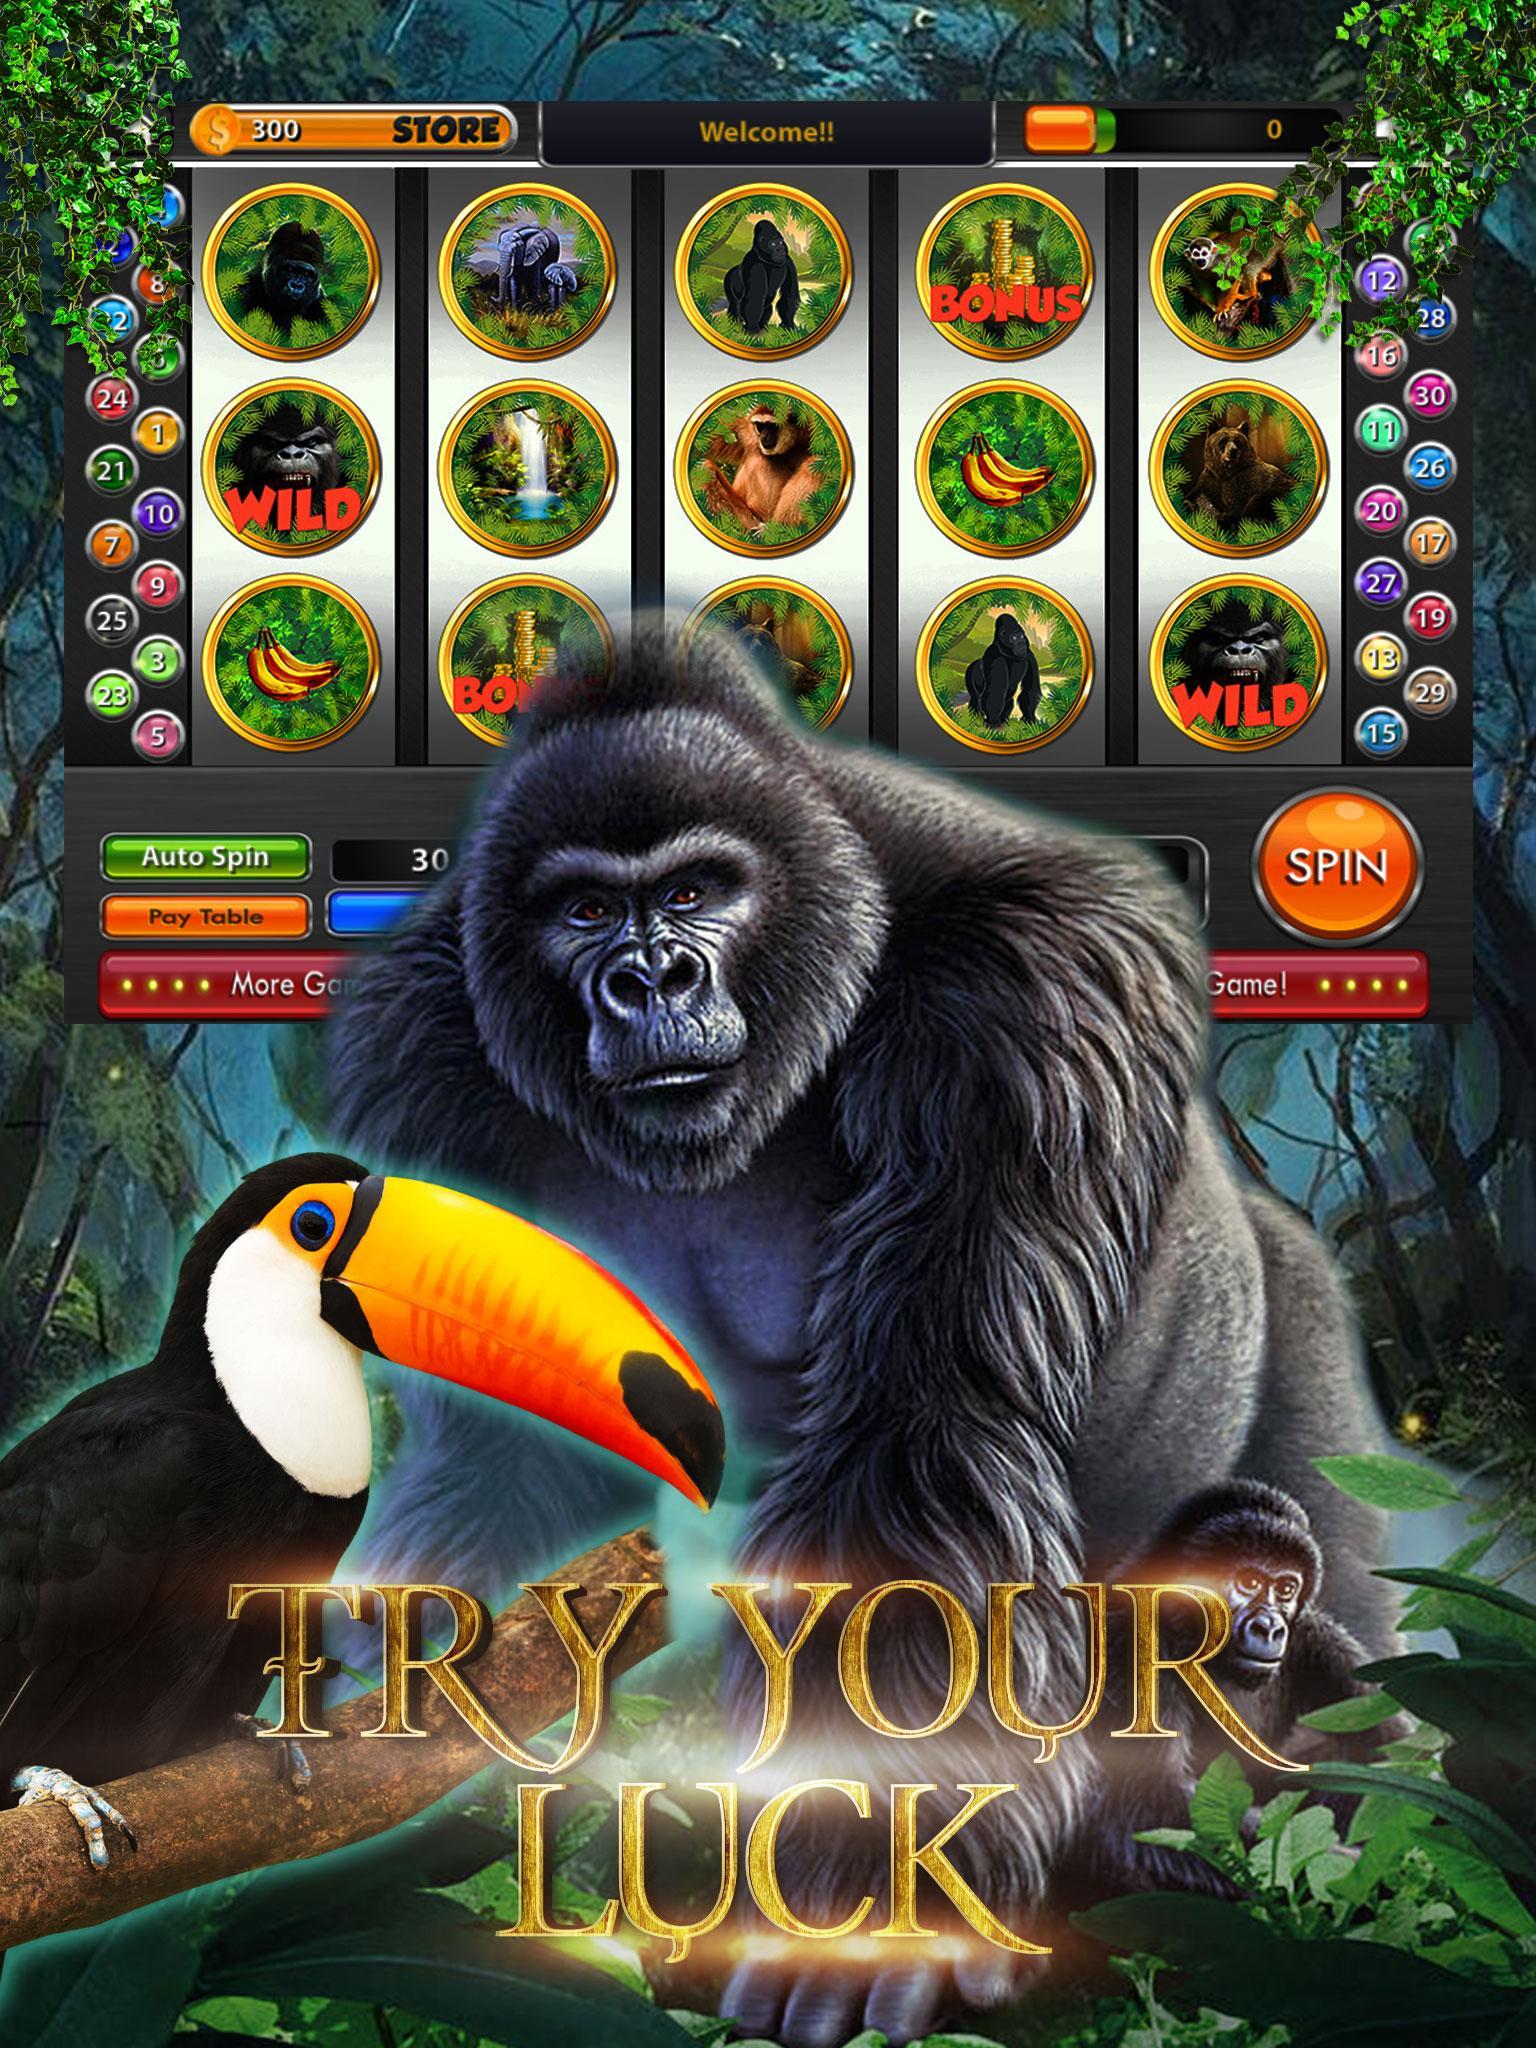 Garilla casino bonus garilla vad1. Слот с гориллой. Игровой автомат горилла. Слот казино с гориллой. Горилла с автоматом.